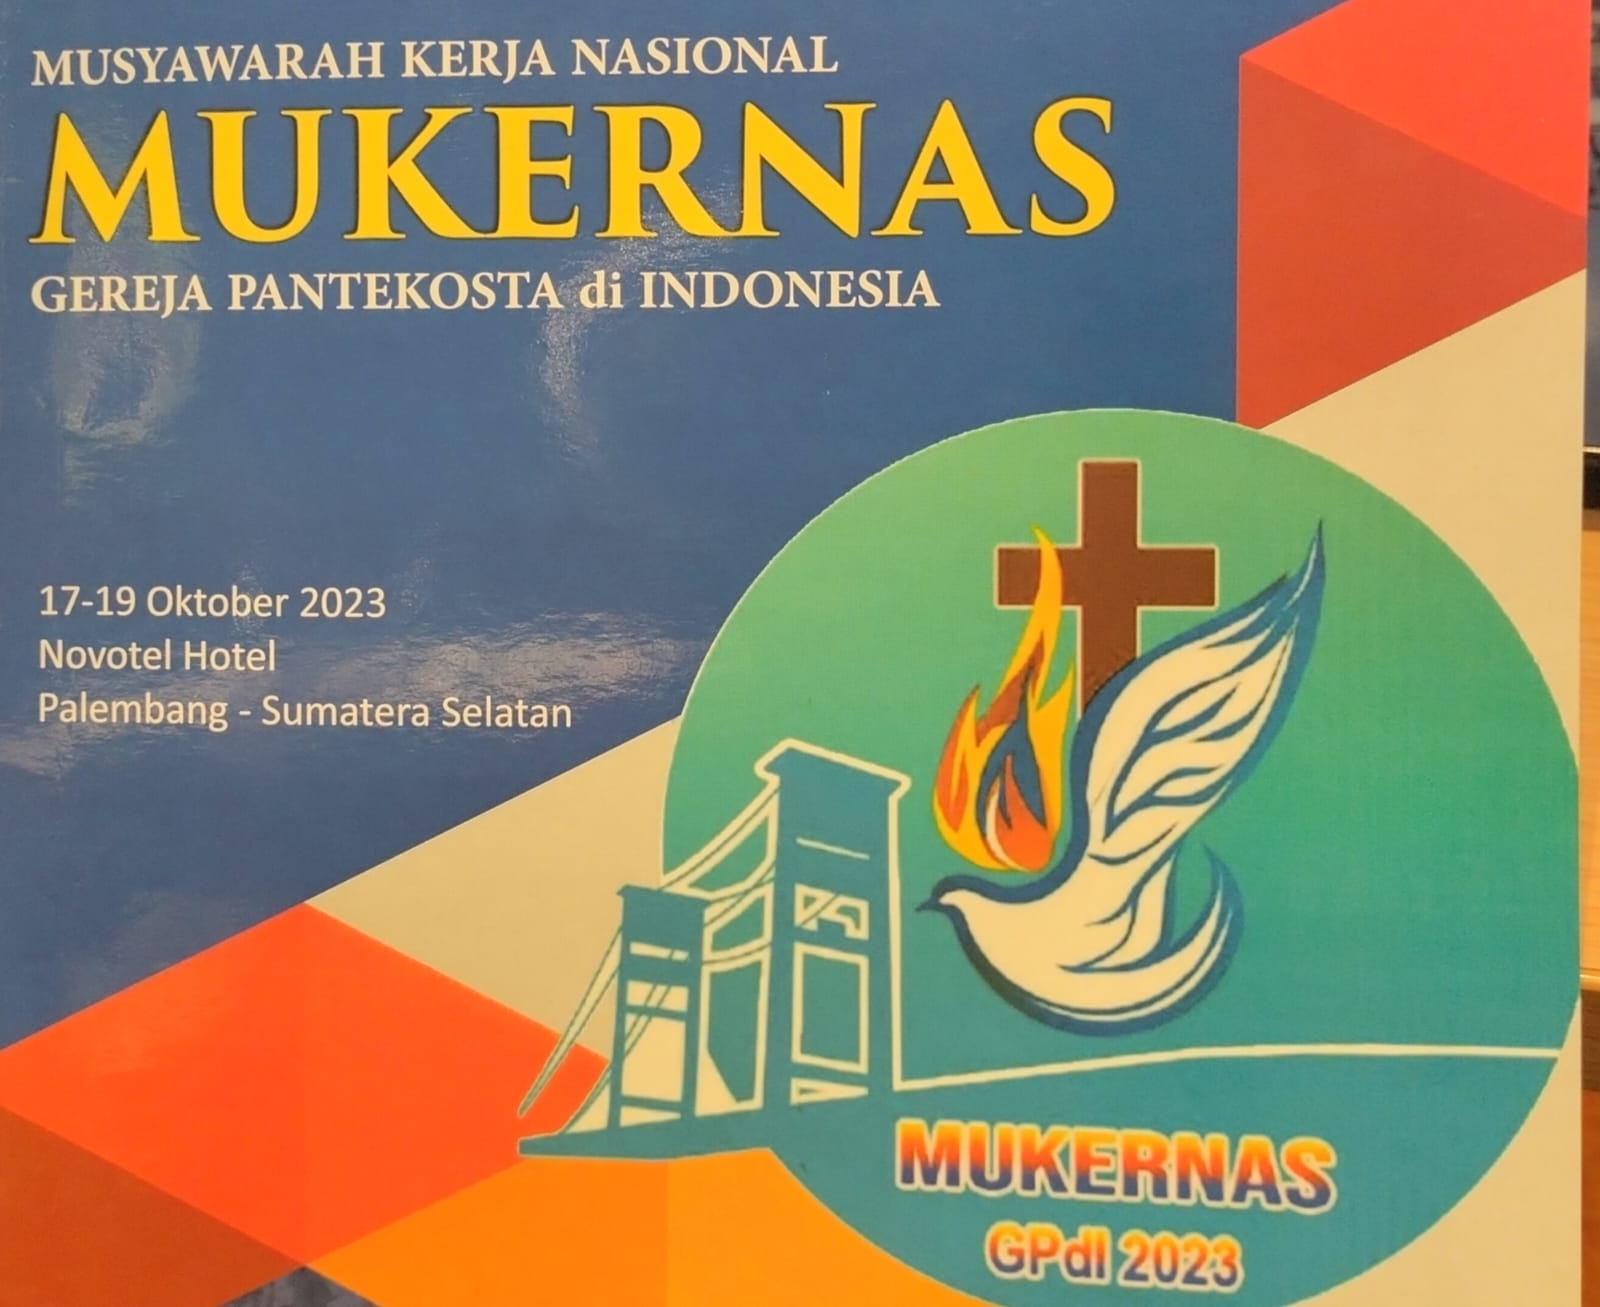 MUKERNAS Gereja Pantekosta di Indonesia (GPdI) 2023